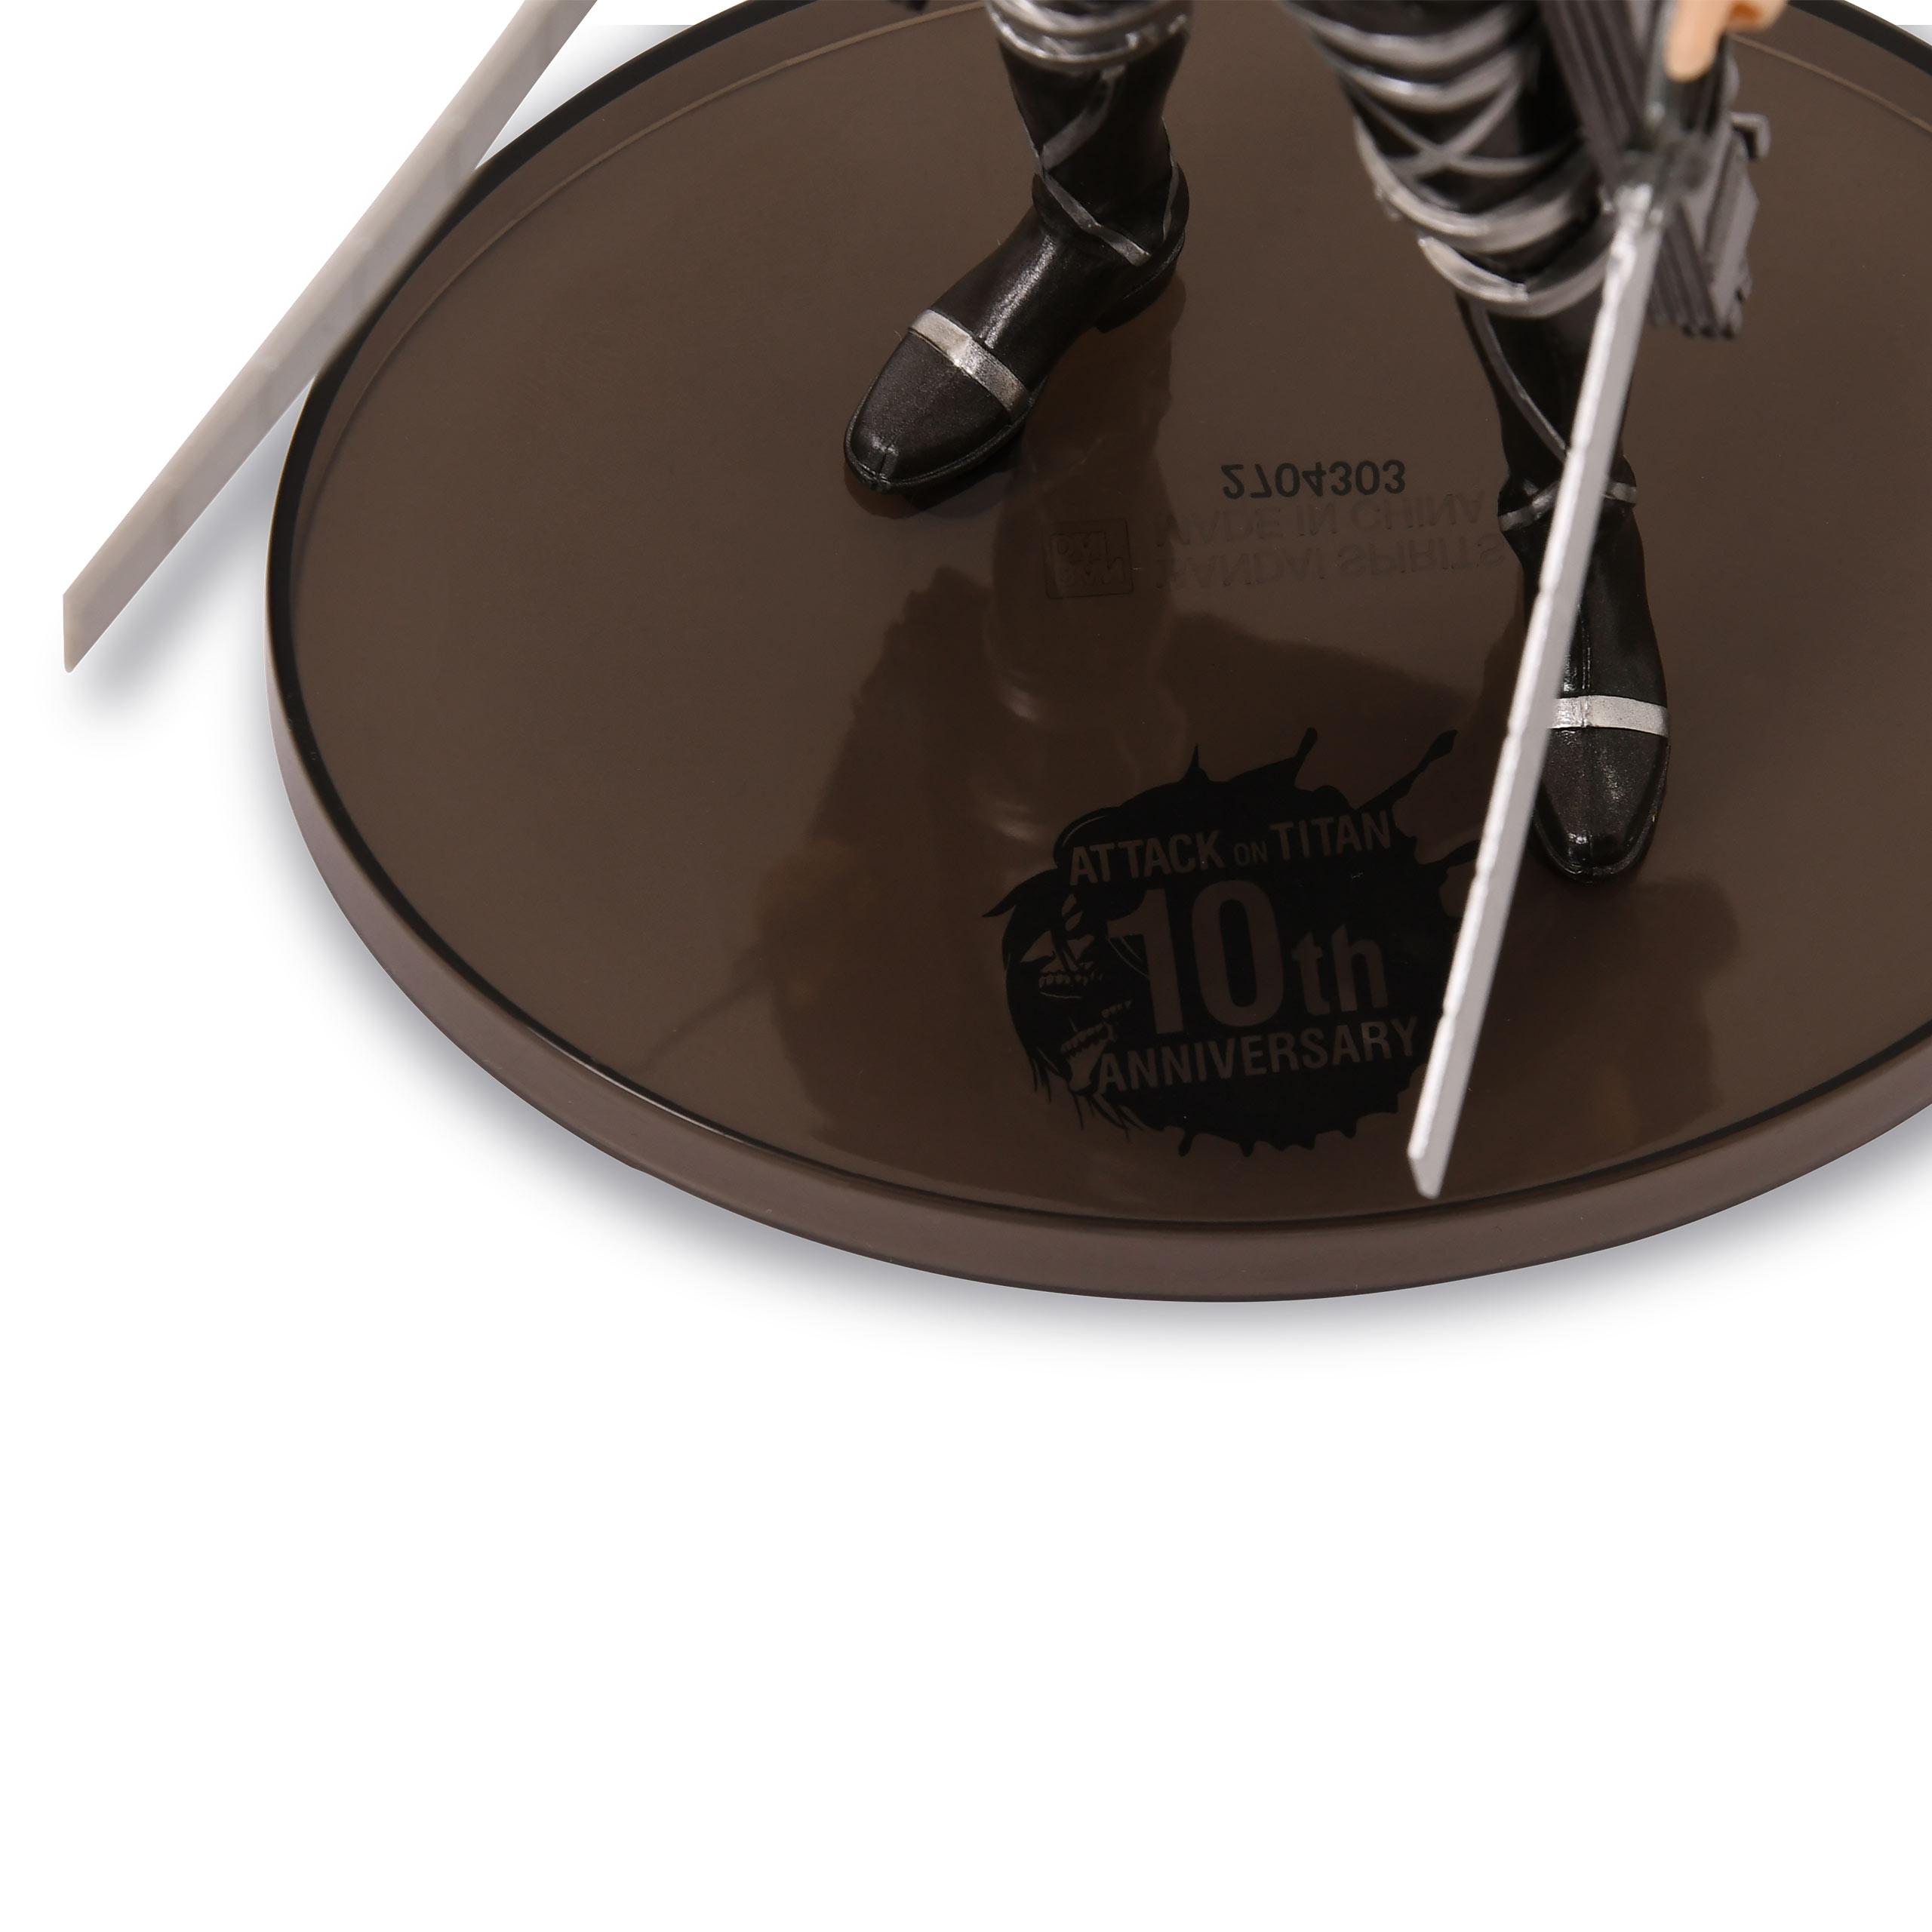 Attack on Titan - The Final Season - Levi Figure Special 10th Anniversary